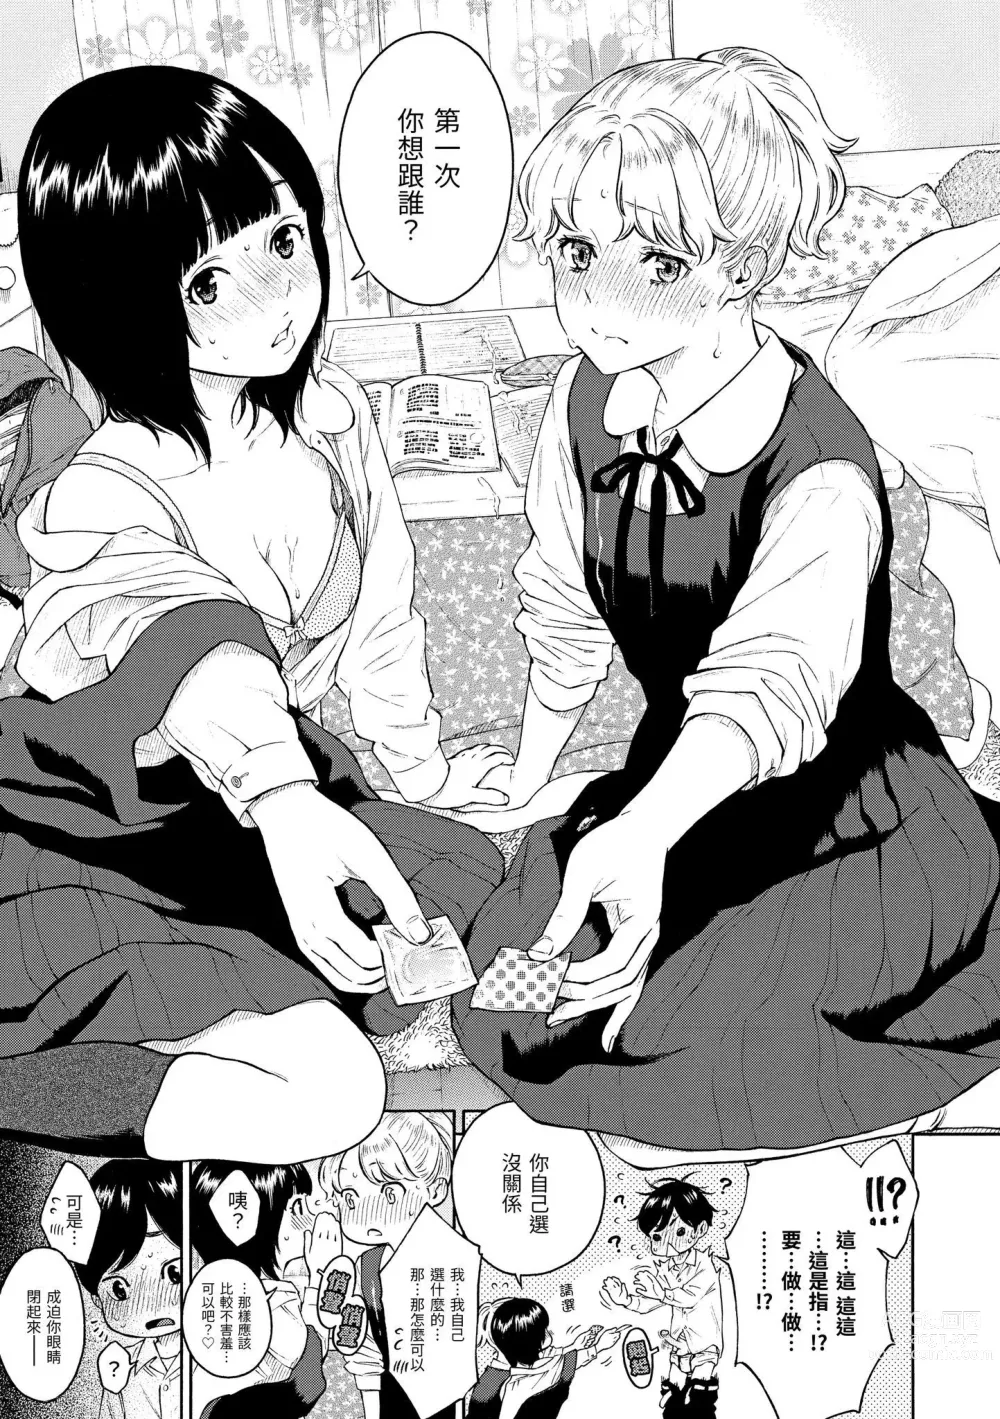 Page 216 of manga 放學後的香草女孩 (decensored)